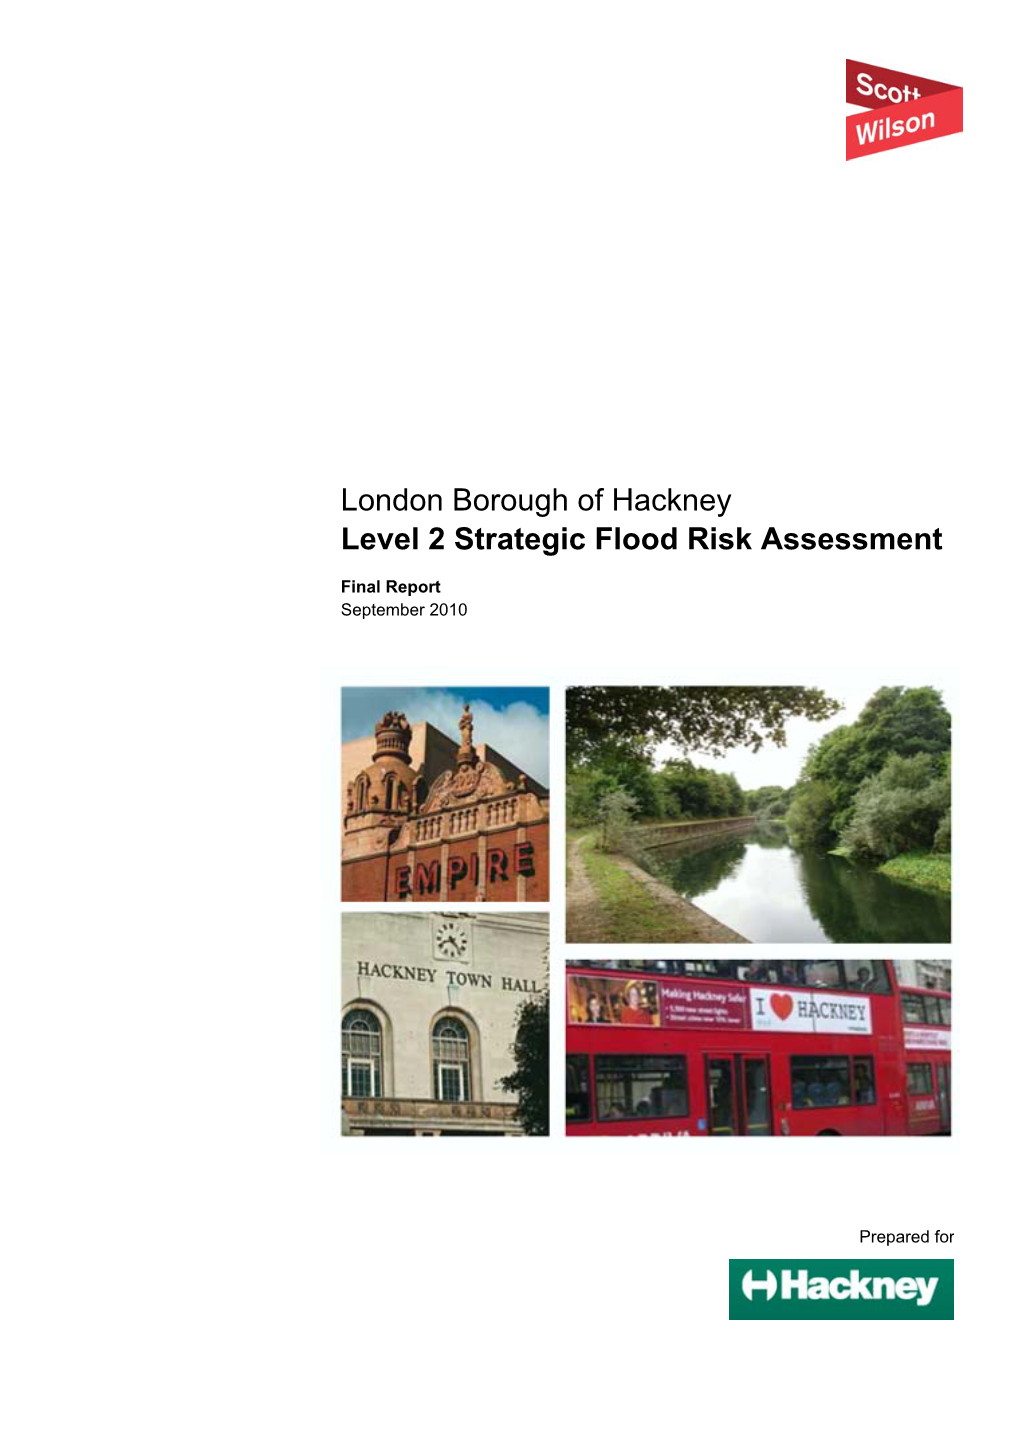 London Borough of Hackney Level 2 Strategic Flood Risk Assessment